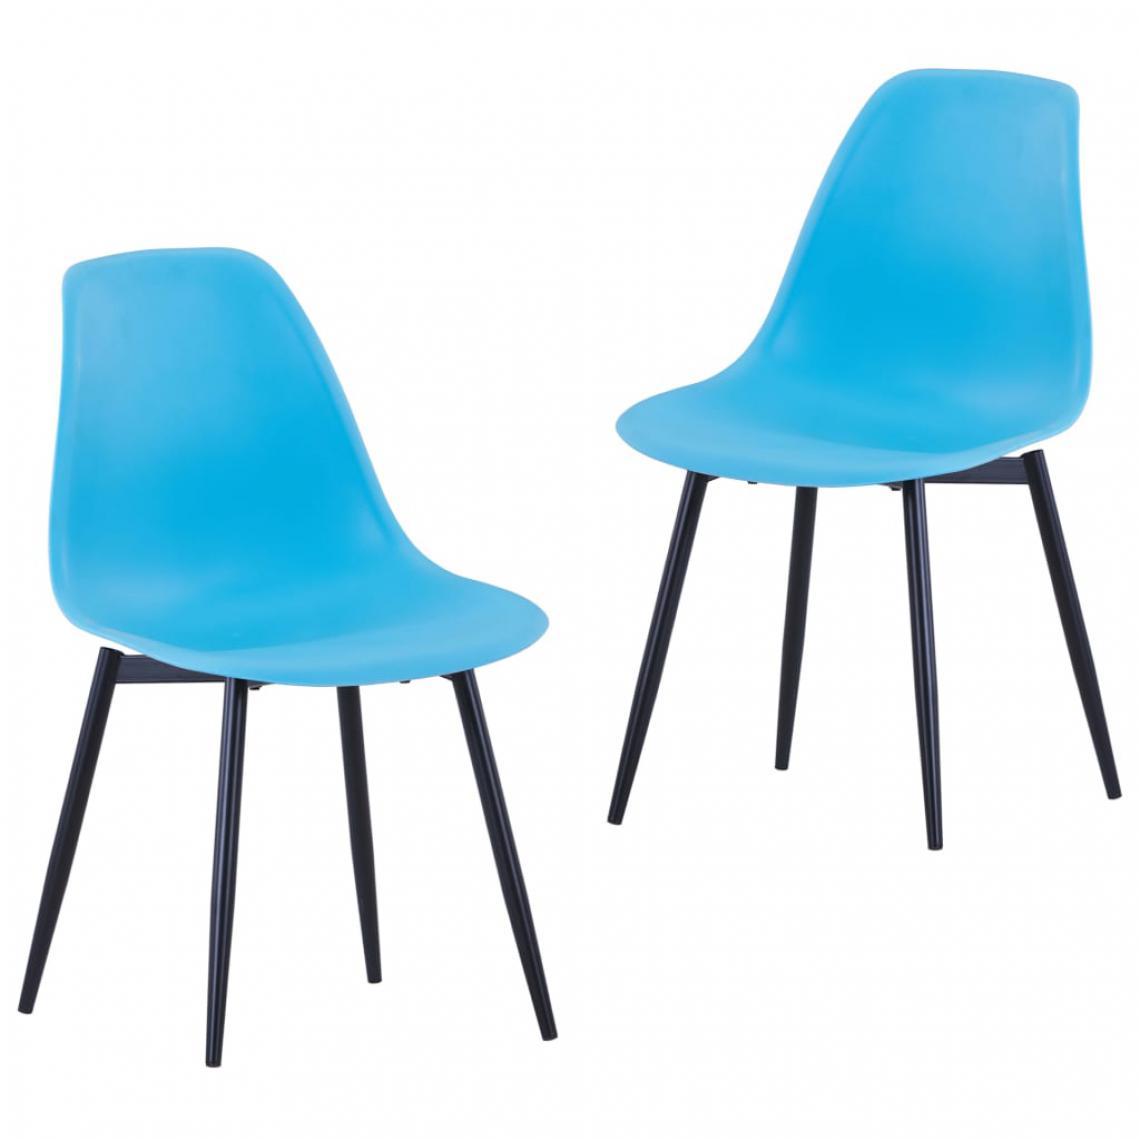 Icaverne - Stylé Fauteuils et chaises serie Kingstown Chaises de salle à manger 2 pcs Bleu PP - Chaises